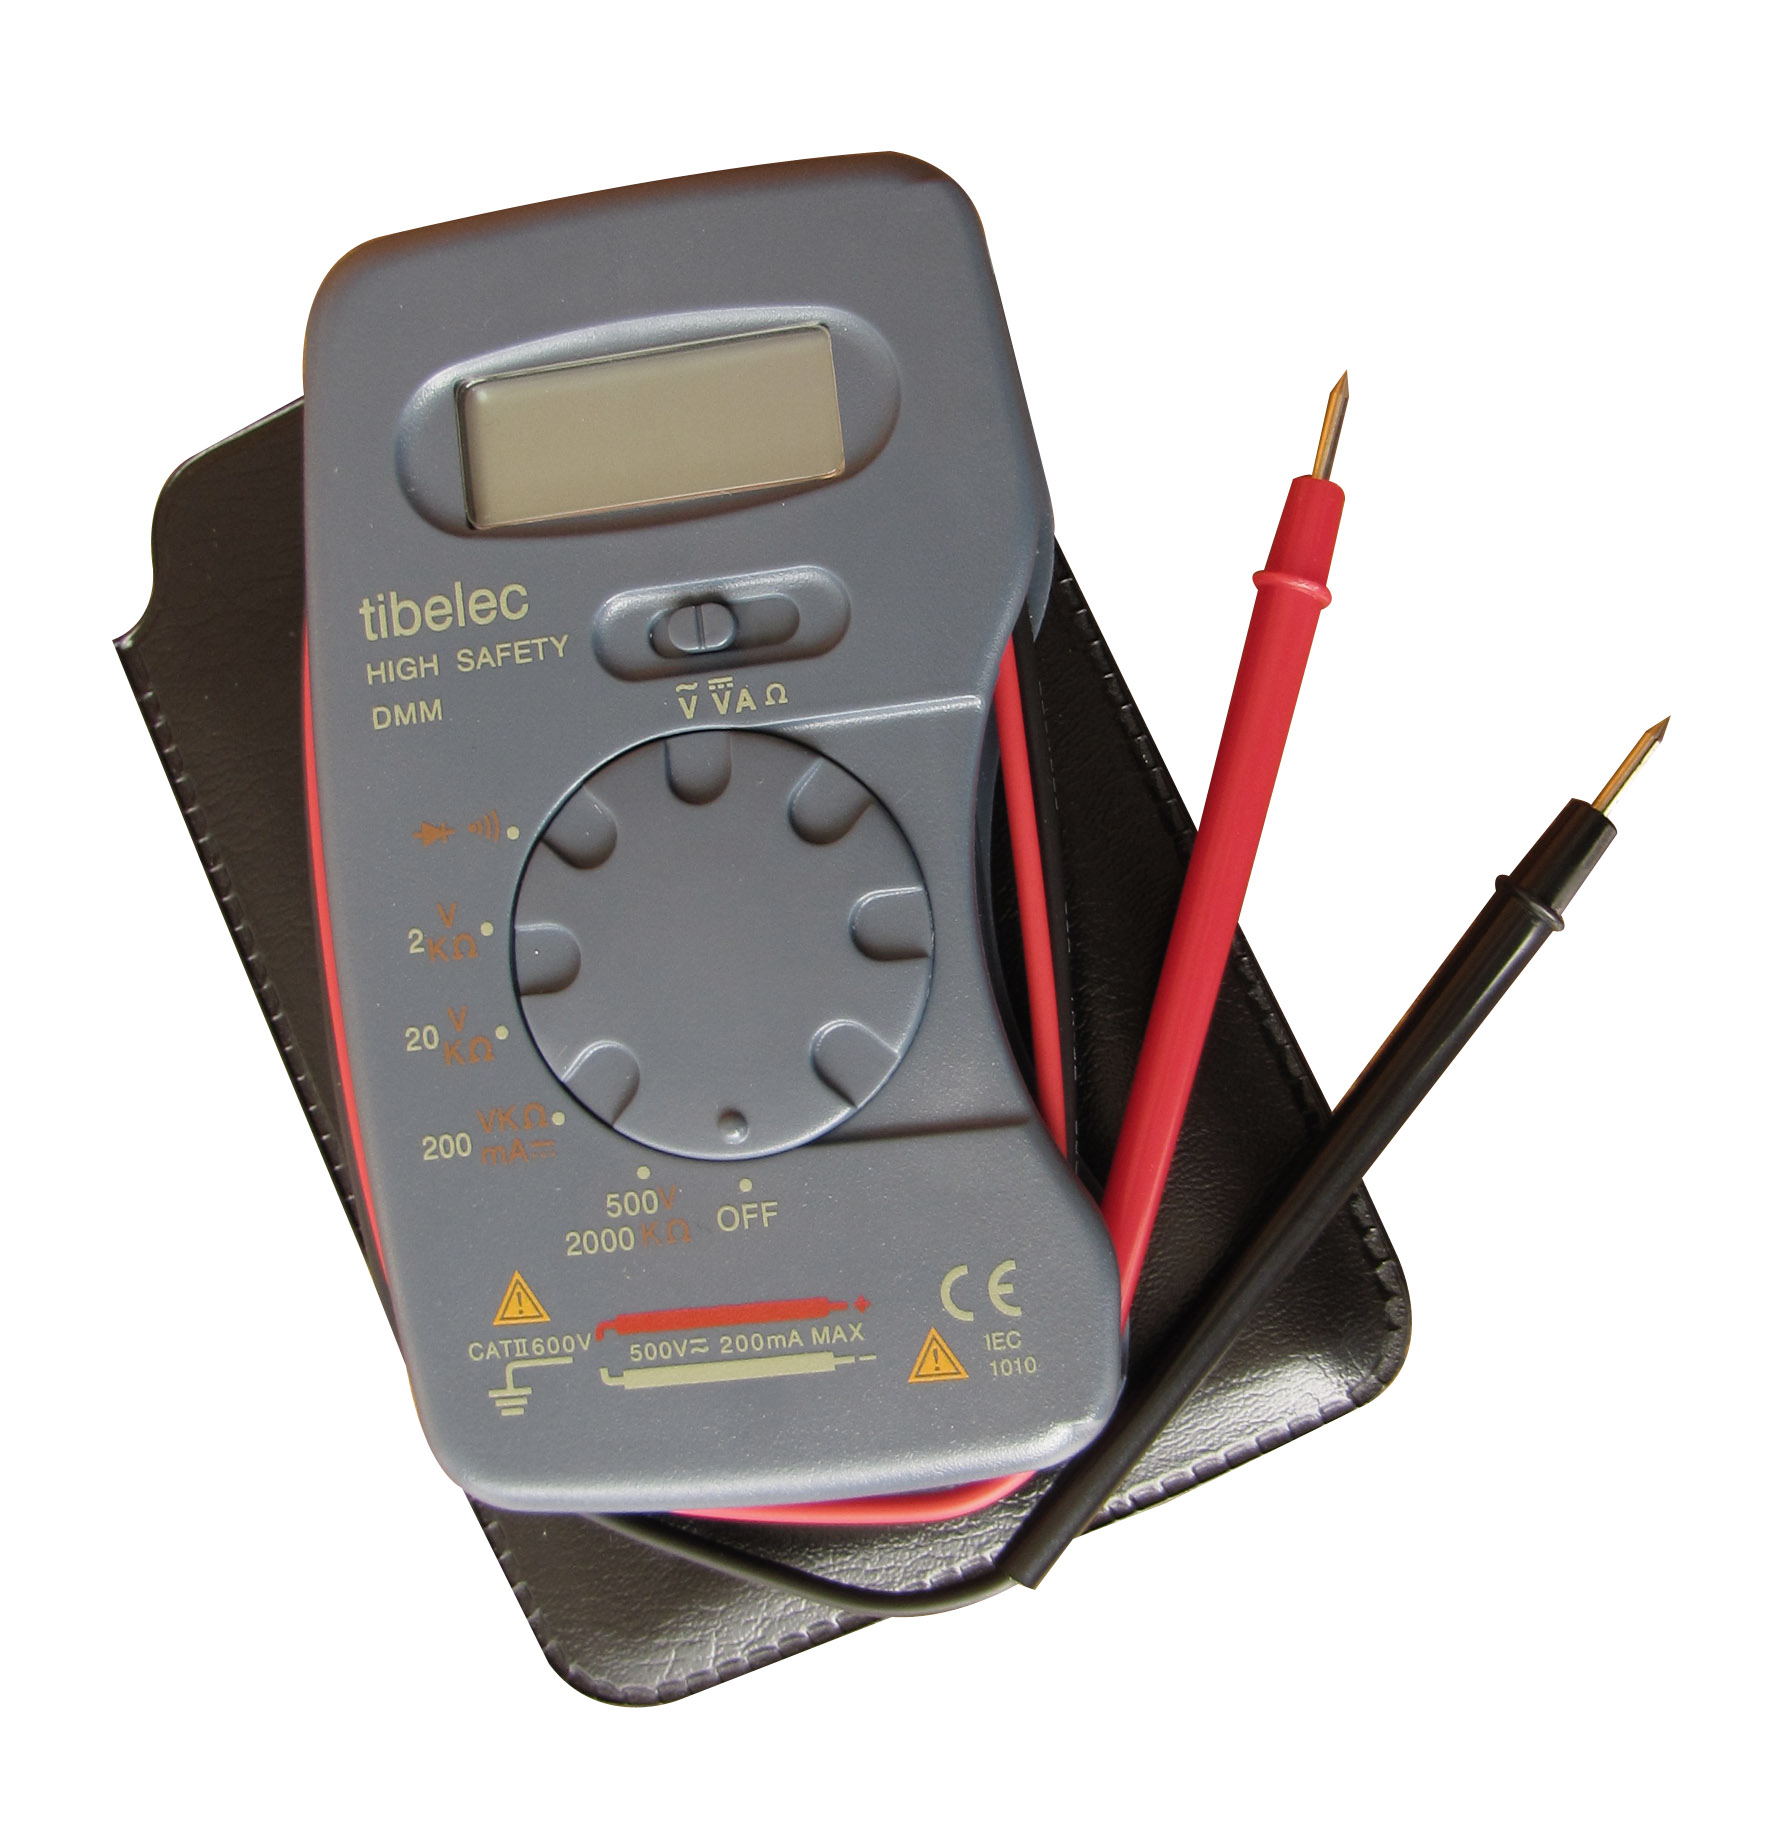 Testeur digital de poche avec cordons intégrés - TIBELEC